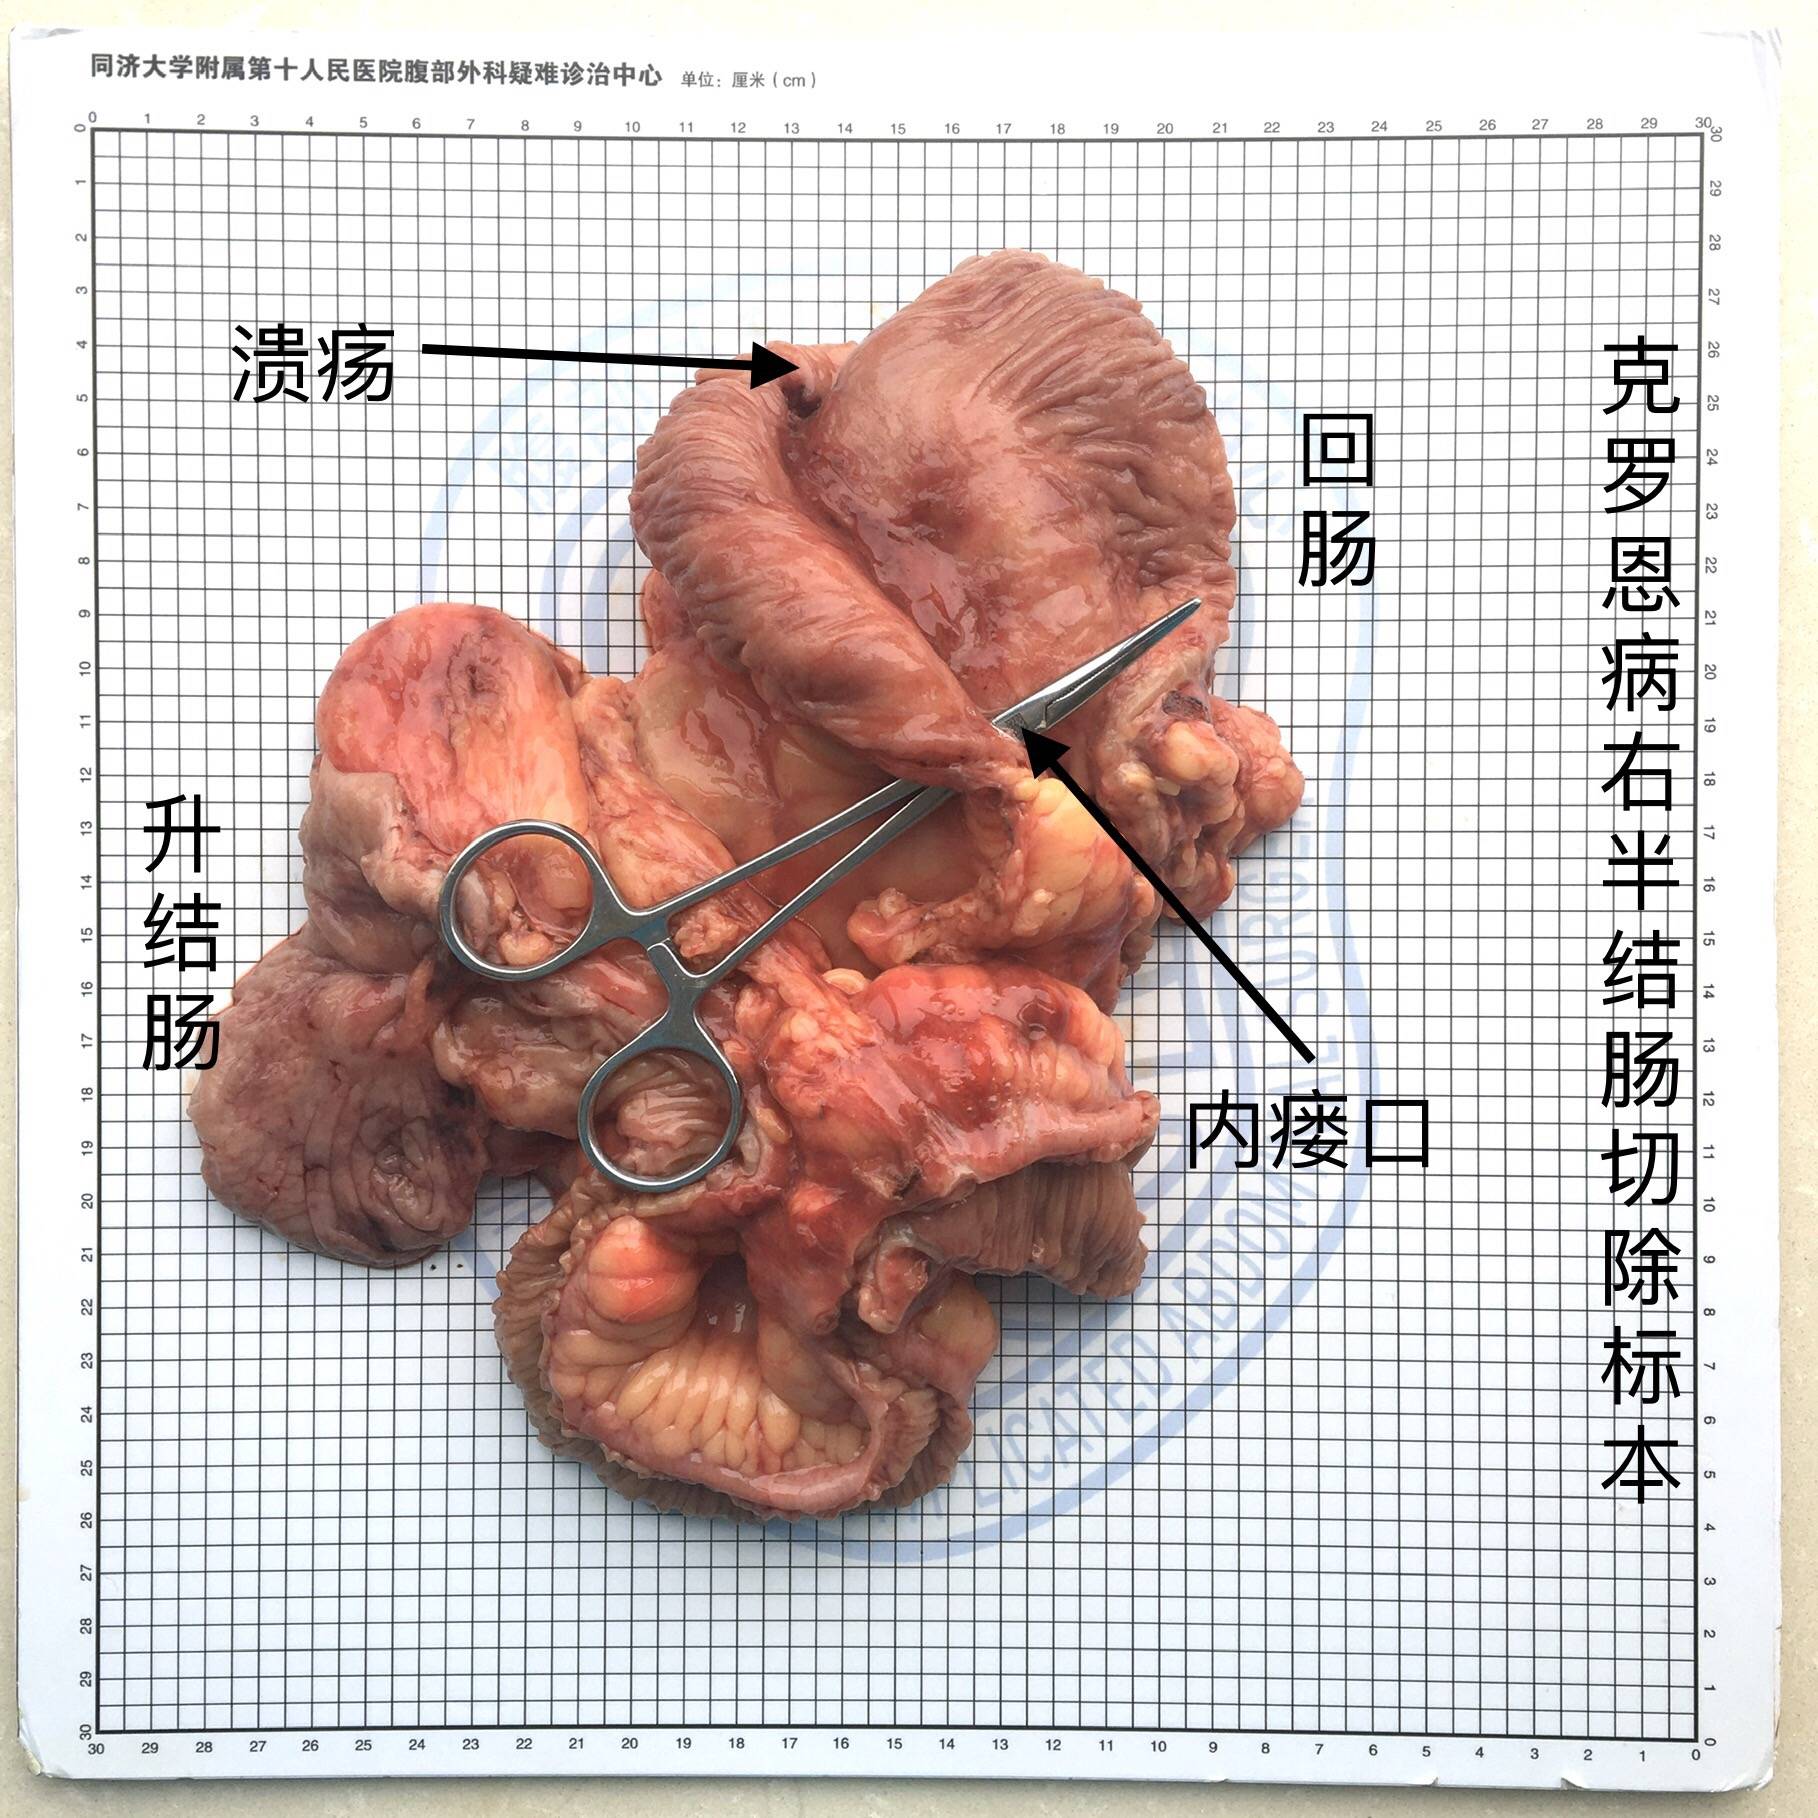 【6.16】尹路教授:腹腔镜下右半结肠切除术(回肠造口术?